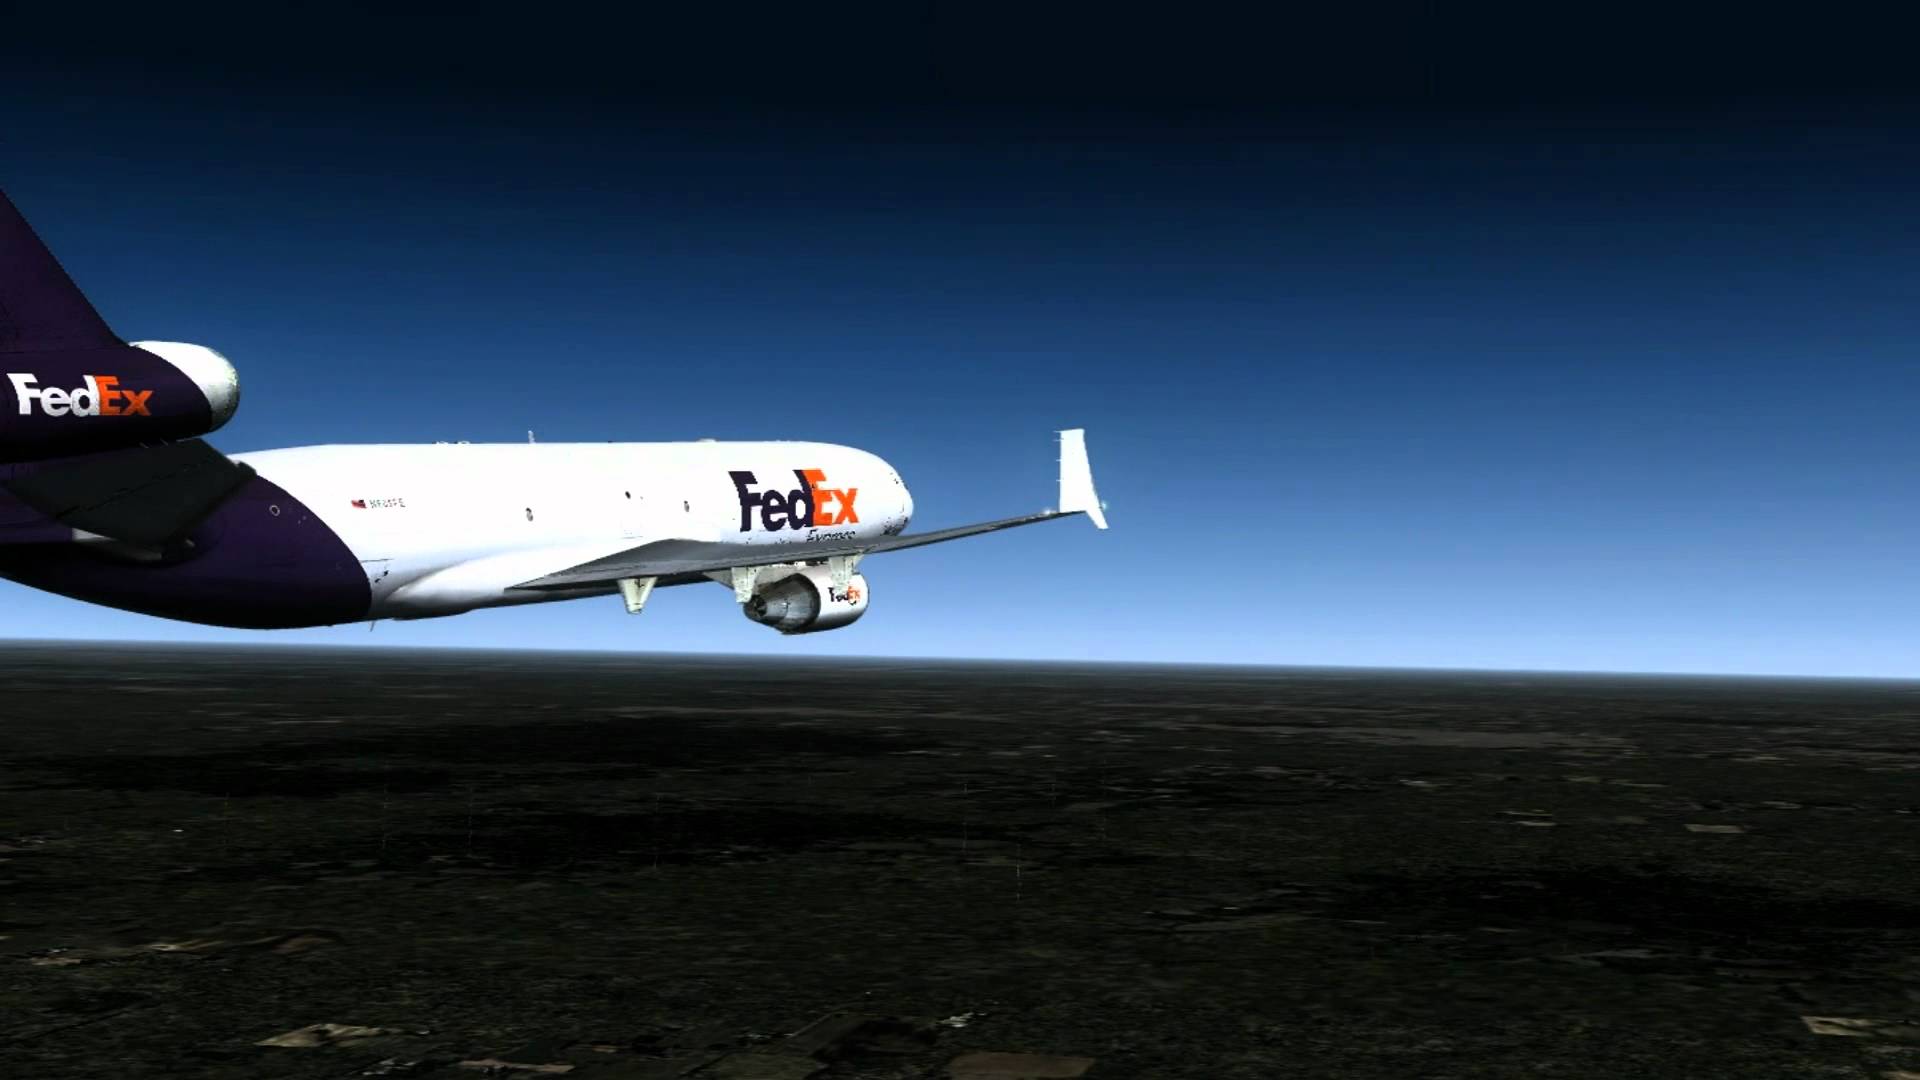 fedex wallpaper,airplane,aircraft,vehicle,air travel,aviation